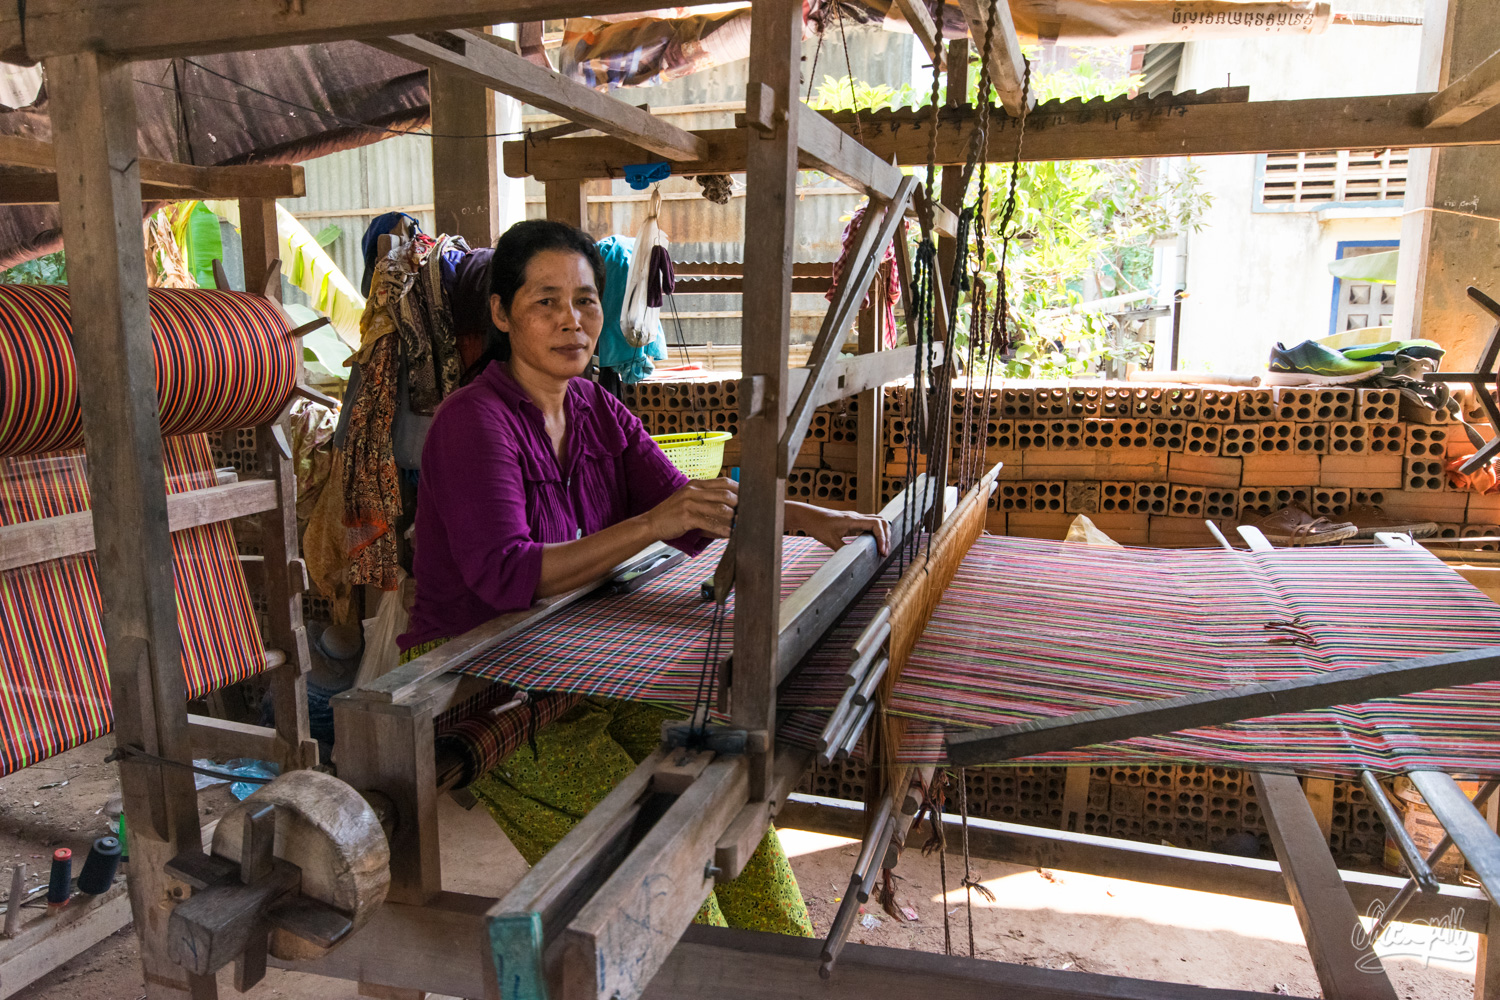 Une jolie tisserande des îles de la soie en plein travail sur son métier à tisser